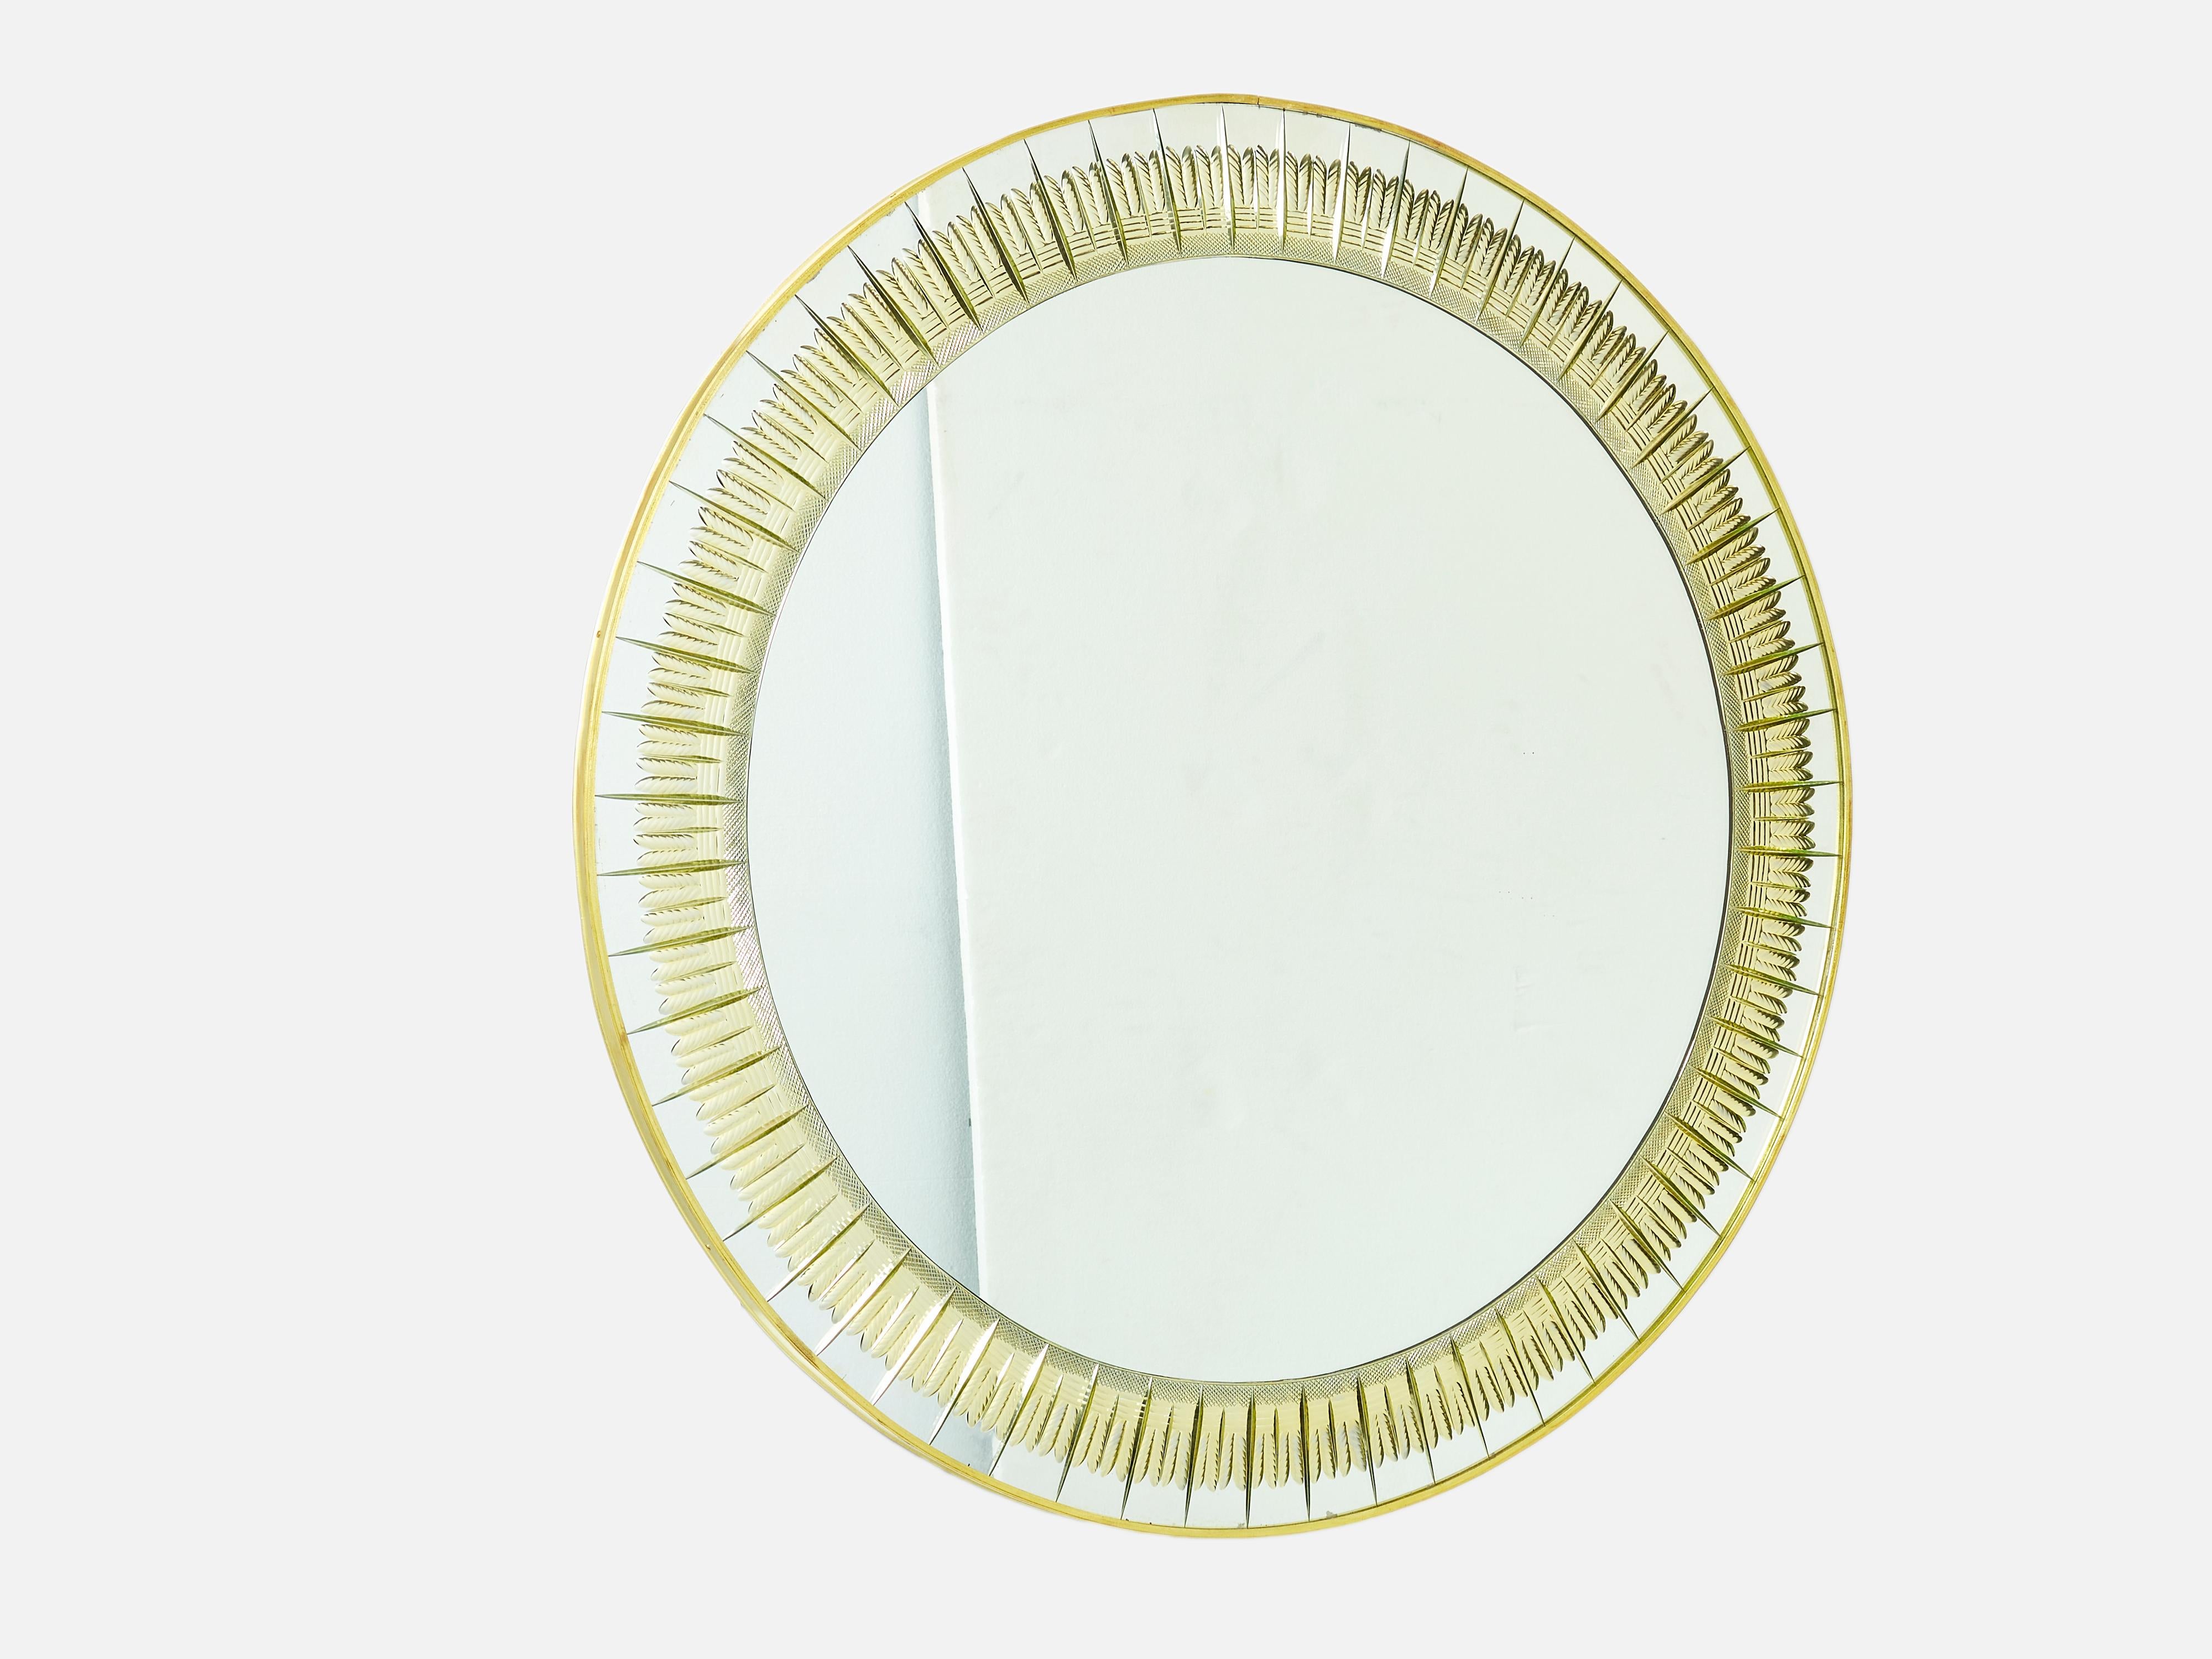 Dieser runde Messingspiegel mit seinem starken Design wurde in den frühen 1960er Jahren von Cristal Arte hergestellt. Dieser Wandspiegel hat eine goldfarbene, gravierte Kristalleinfassung mit Messingrahmen und -besatz. Ein perfekter Spiegel für